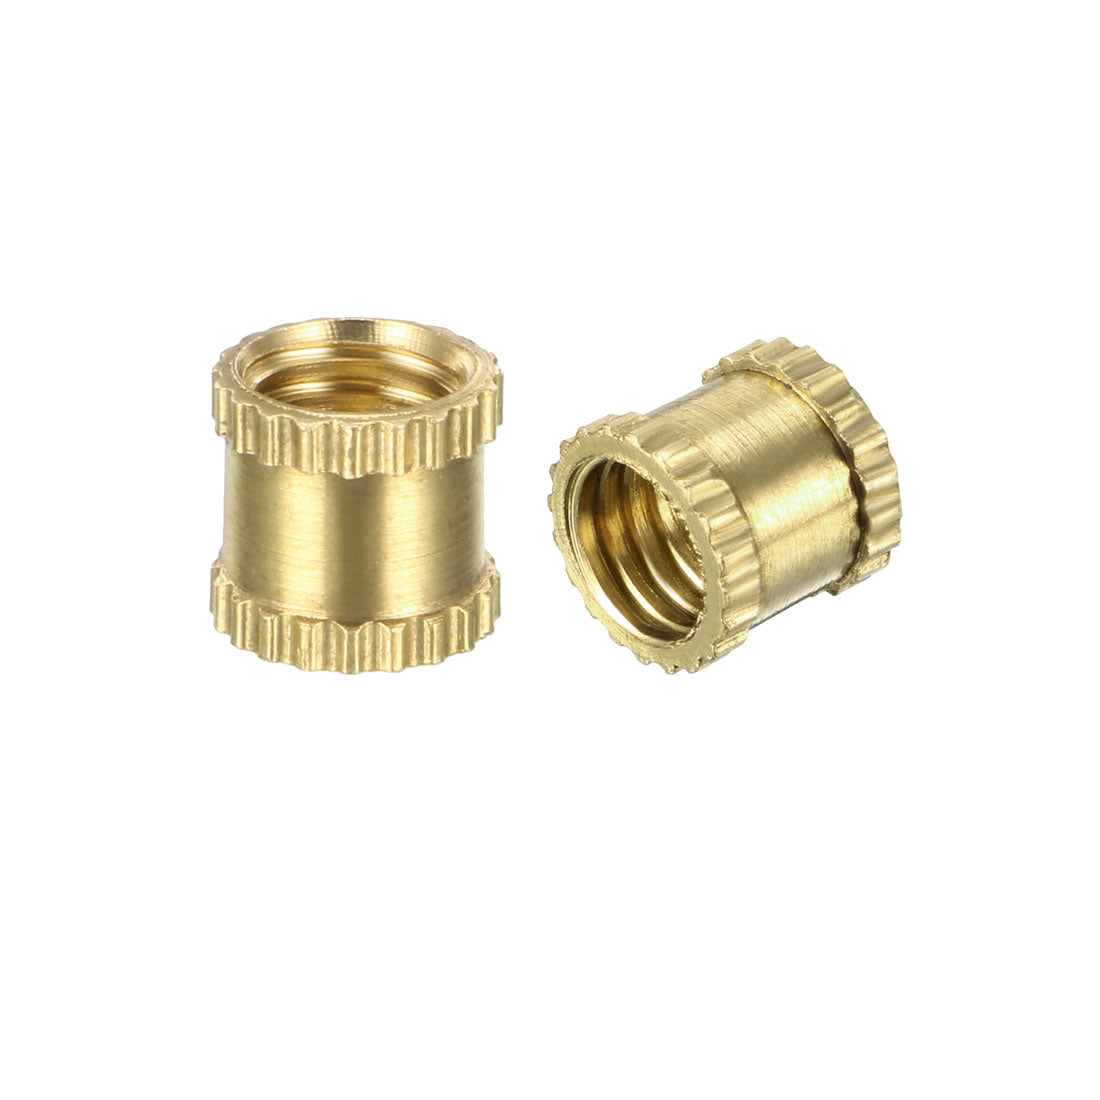 uxcell Uxcell M5 x 6mm(L) x 6.4mm(OD) Female Thread Brass Knurled Threaded Insert Embedment Nuts, 100 Pcs